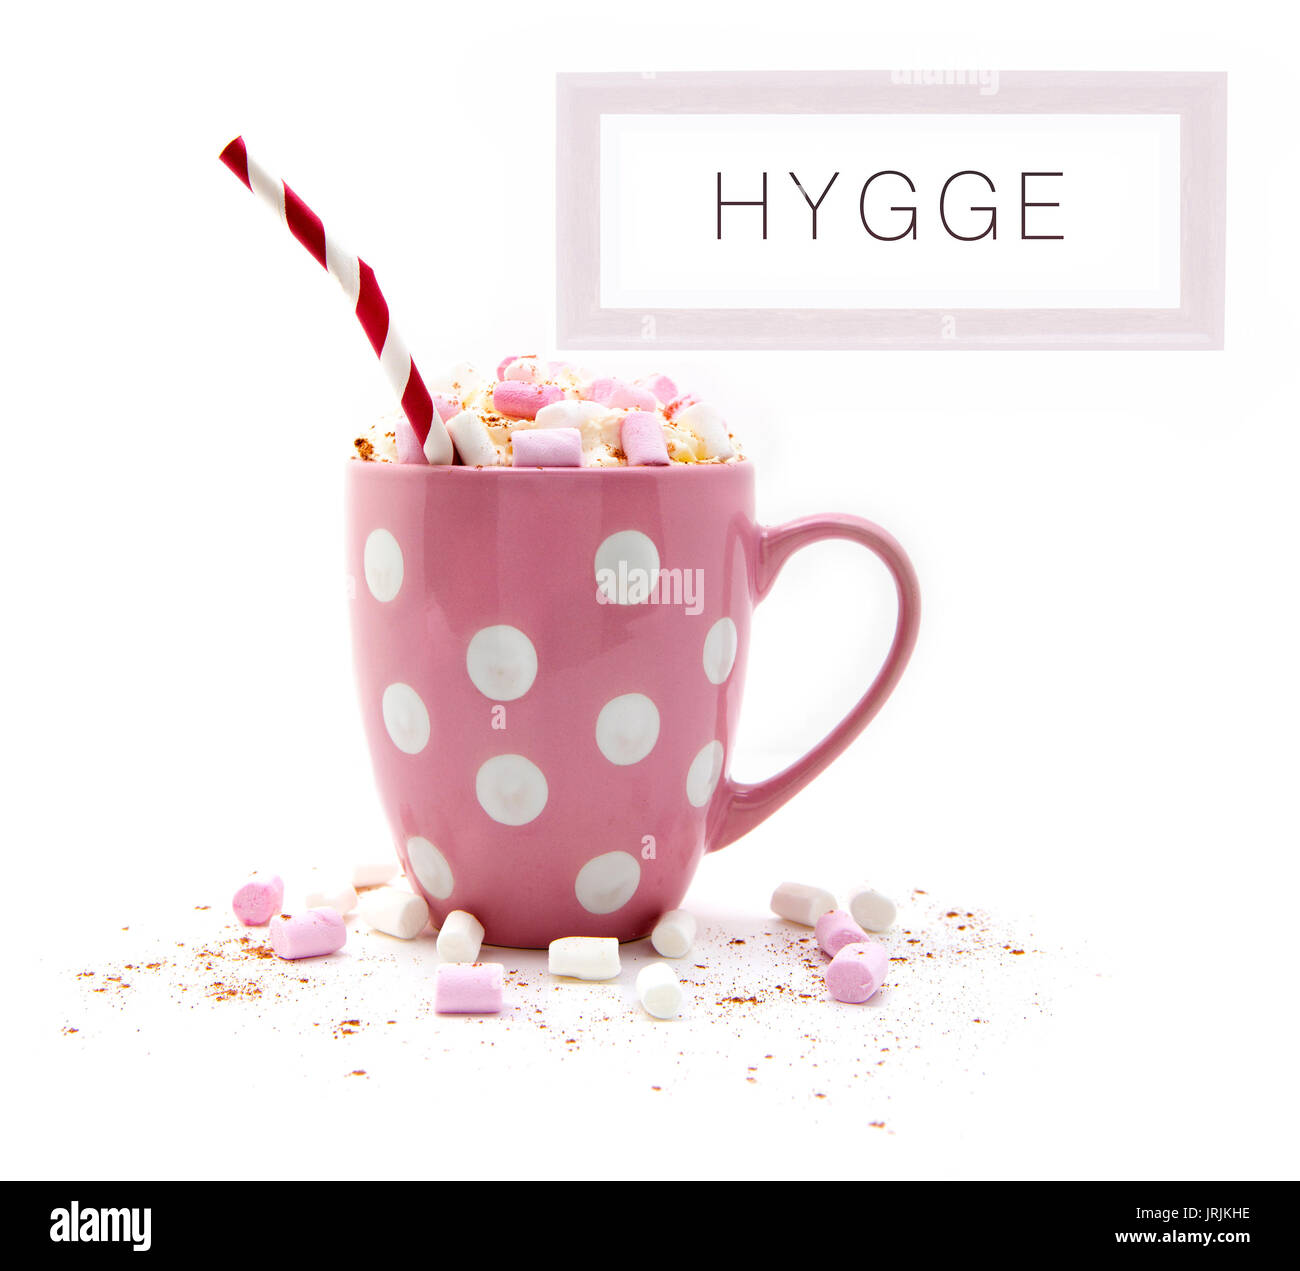 Chocolate caliente en una taza rosa con malvaviscos un rojo con rayas blancas y una imagen de paja Hygge sobre un fondo blanco. Foto de stock